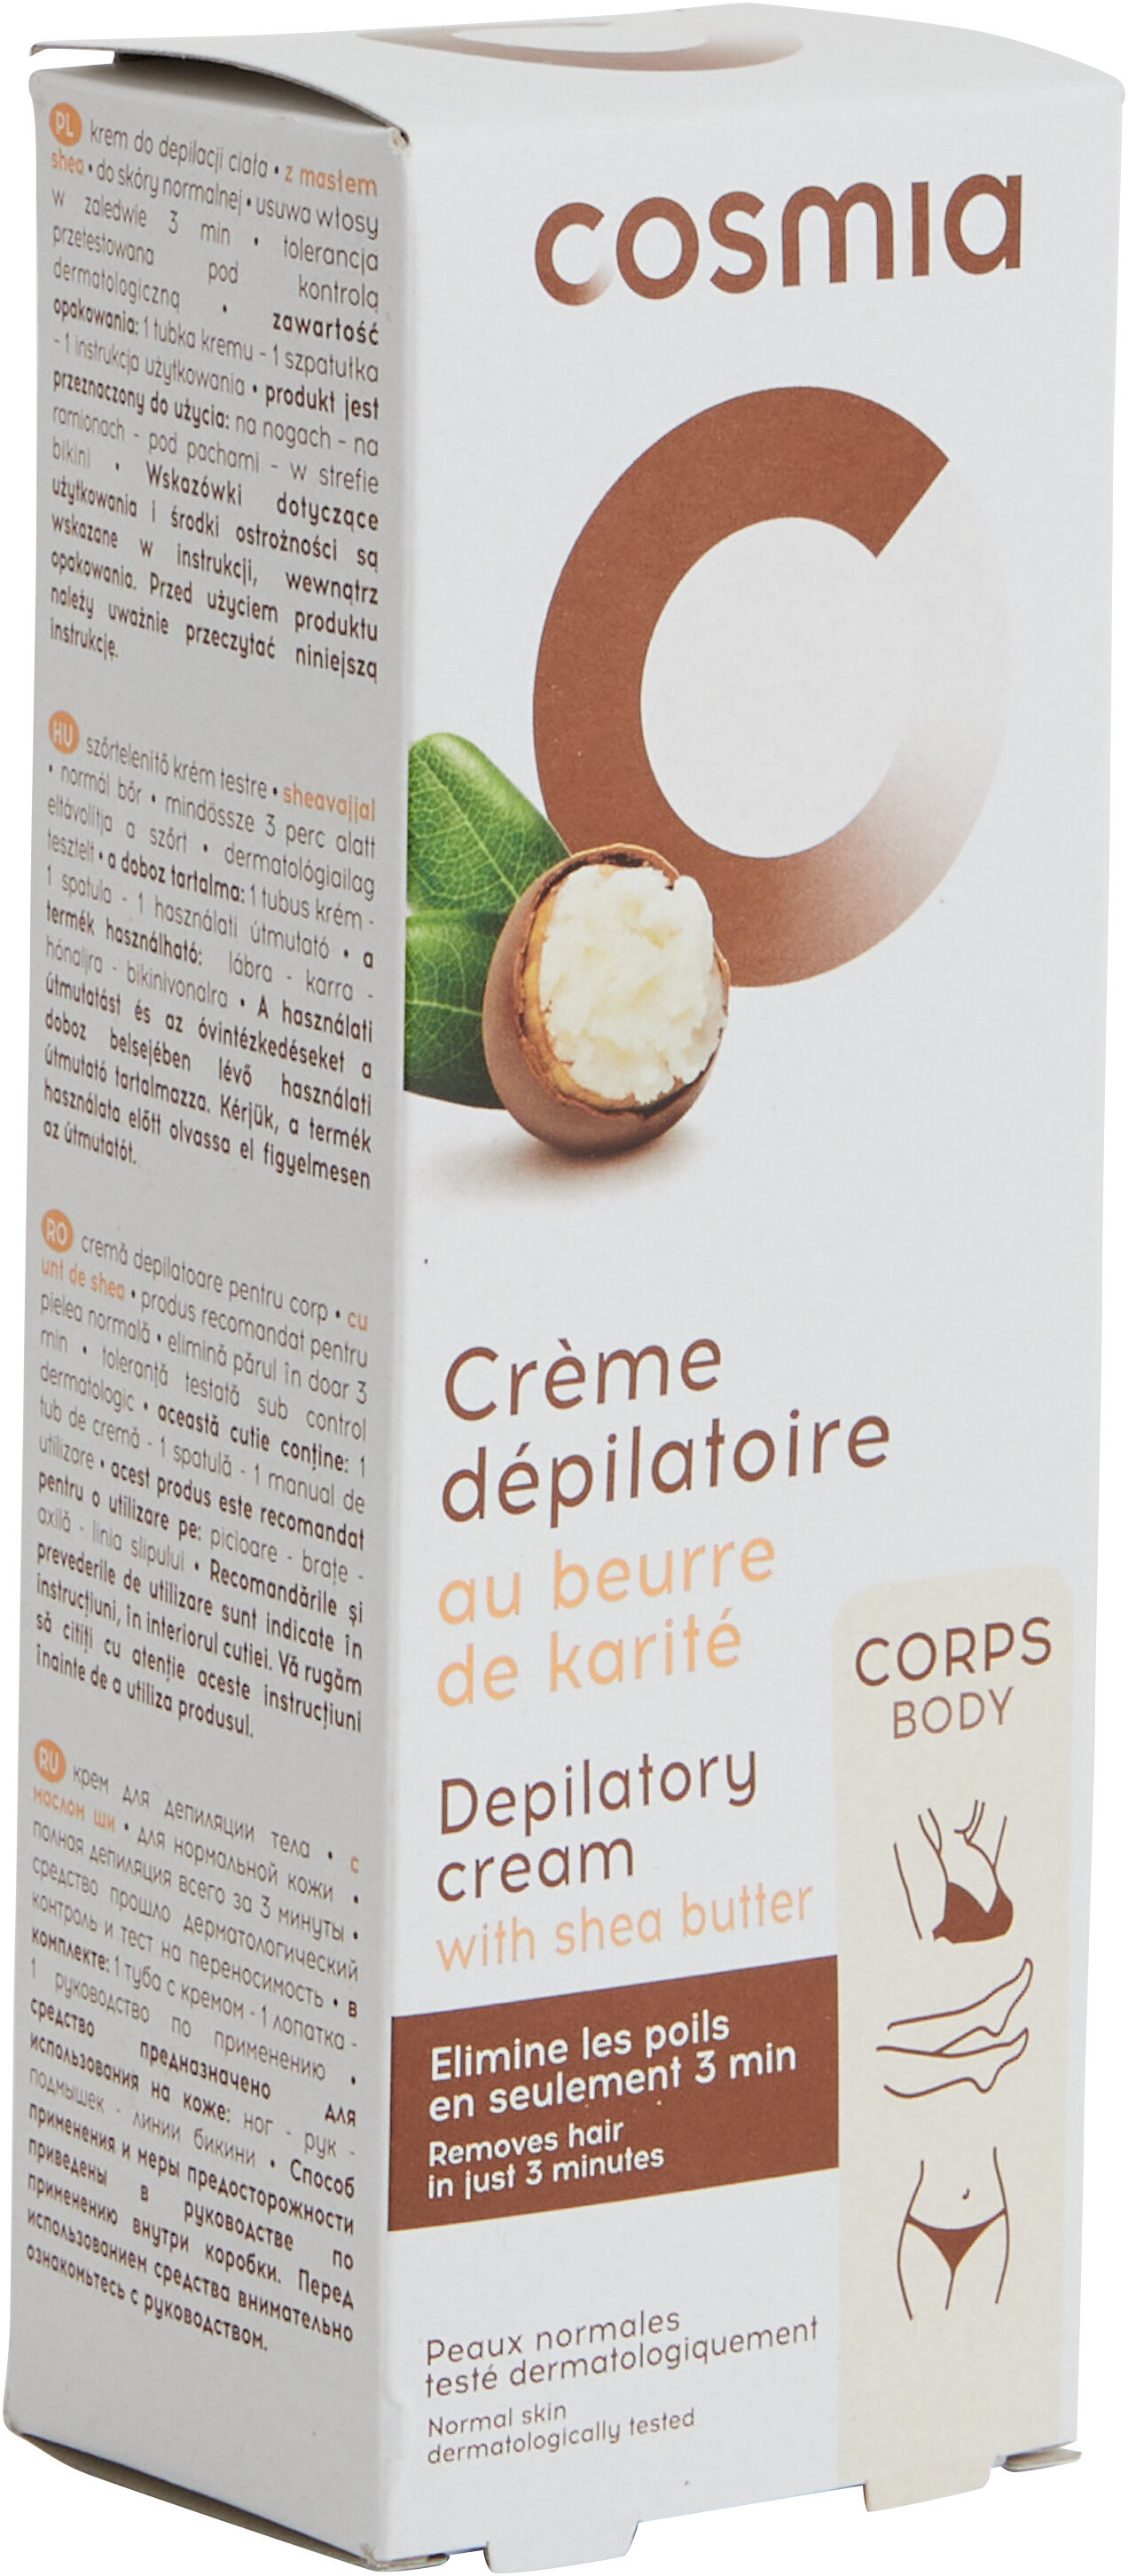 Crème dépilatoire au beurre de karité - Product - fr